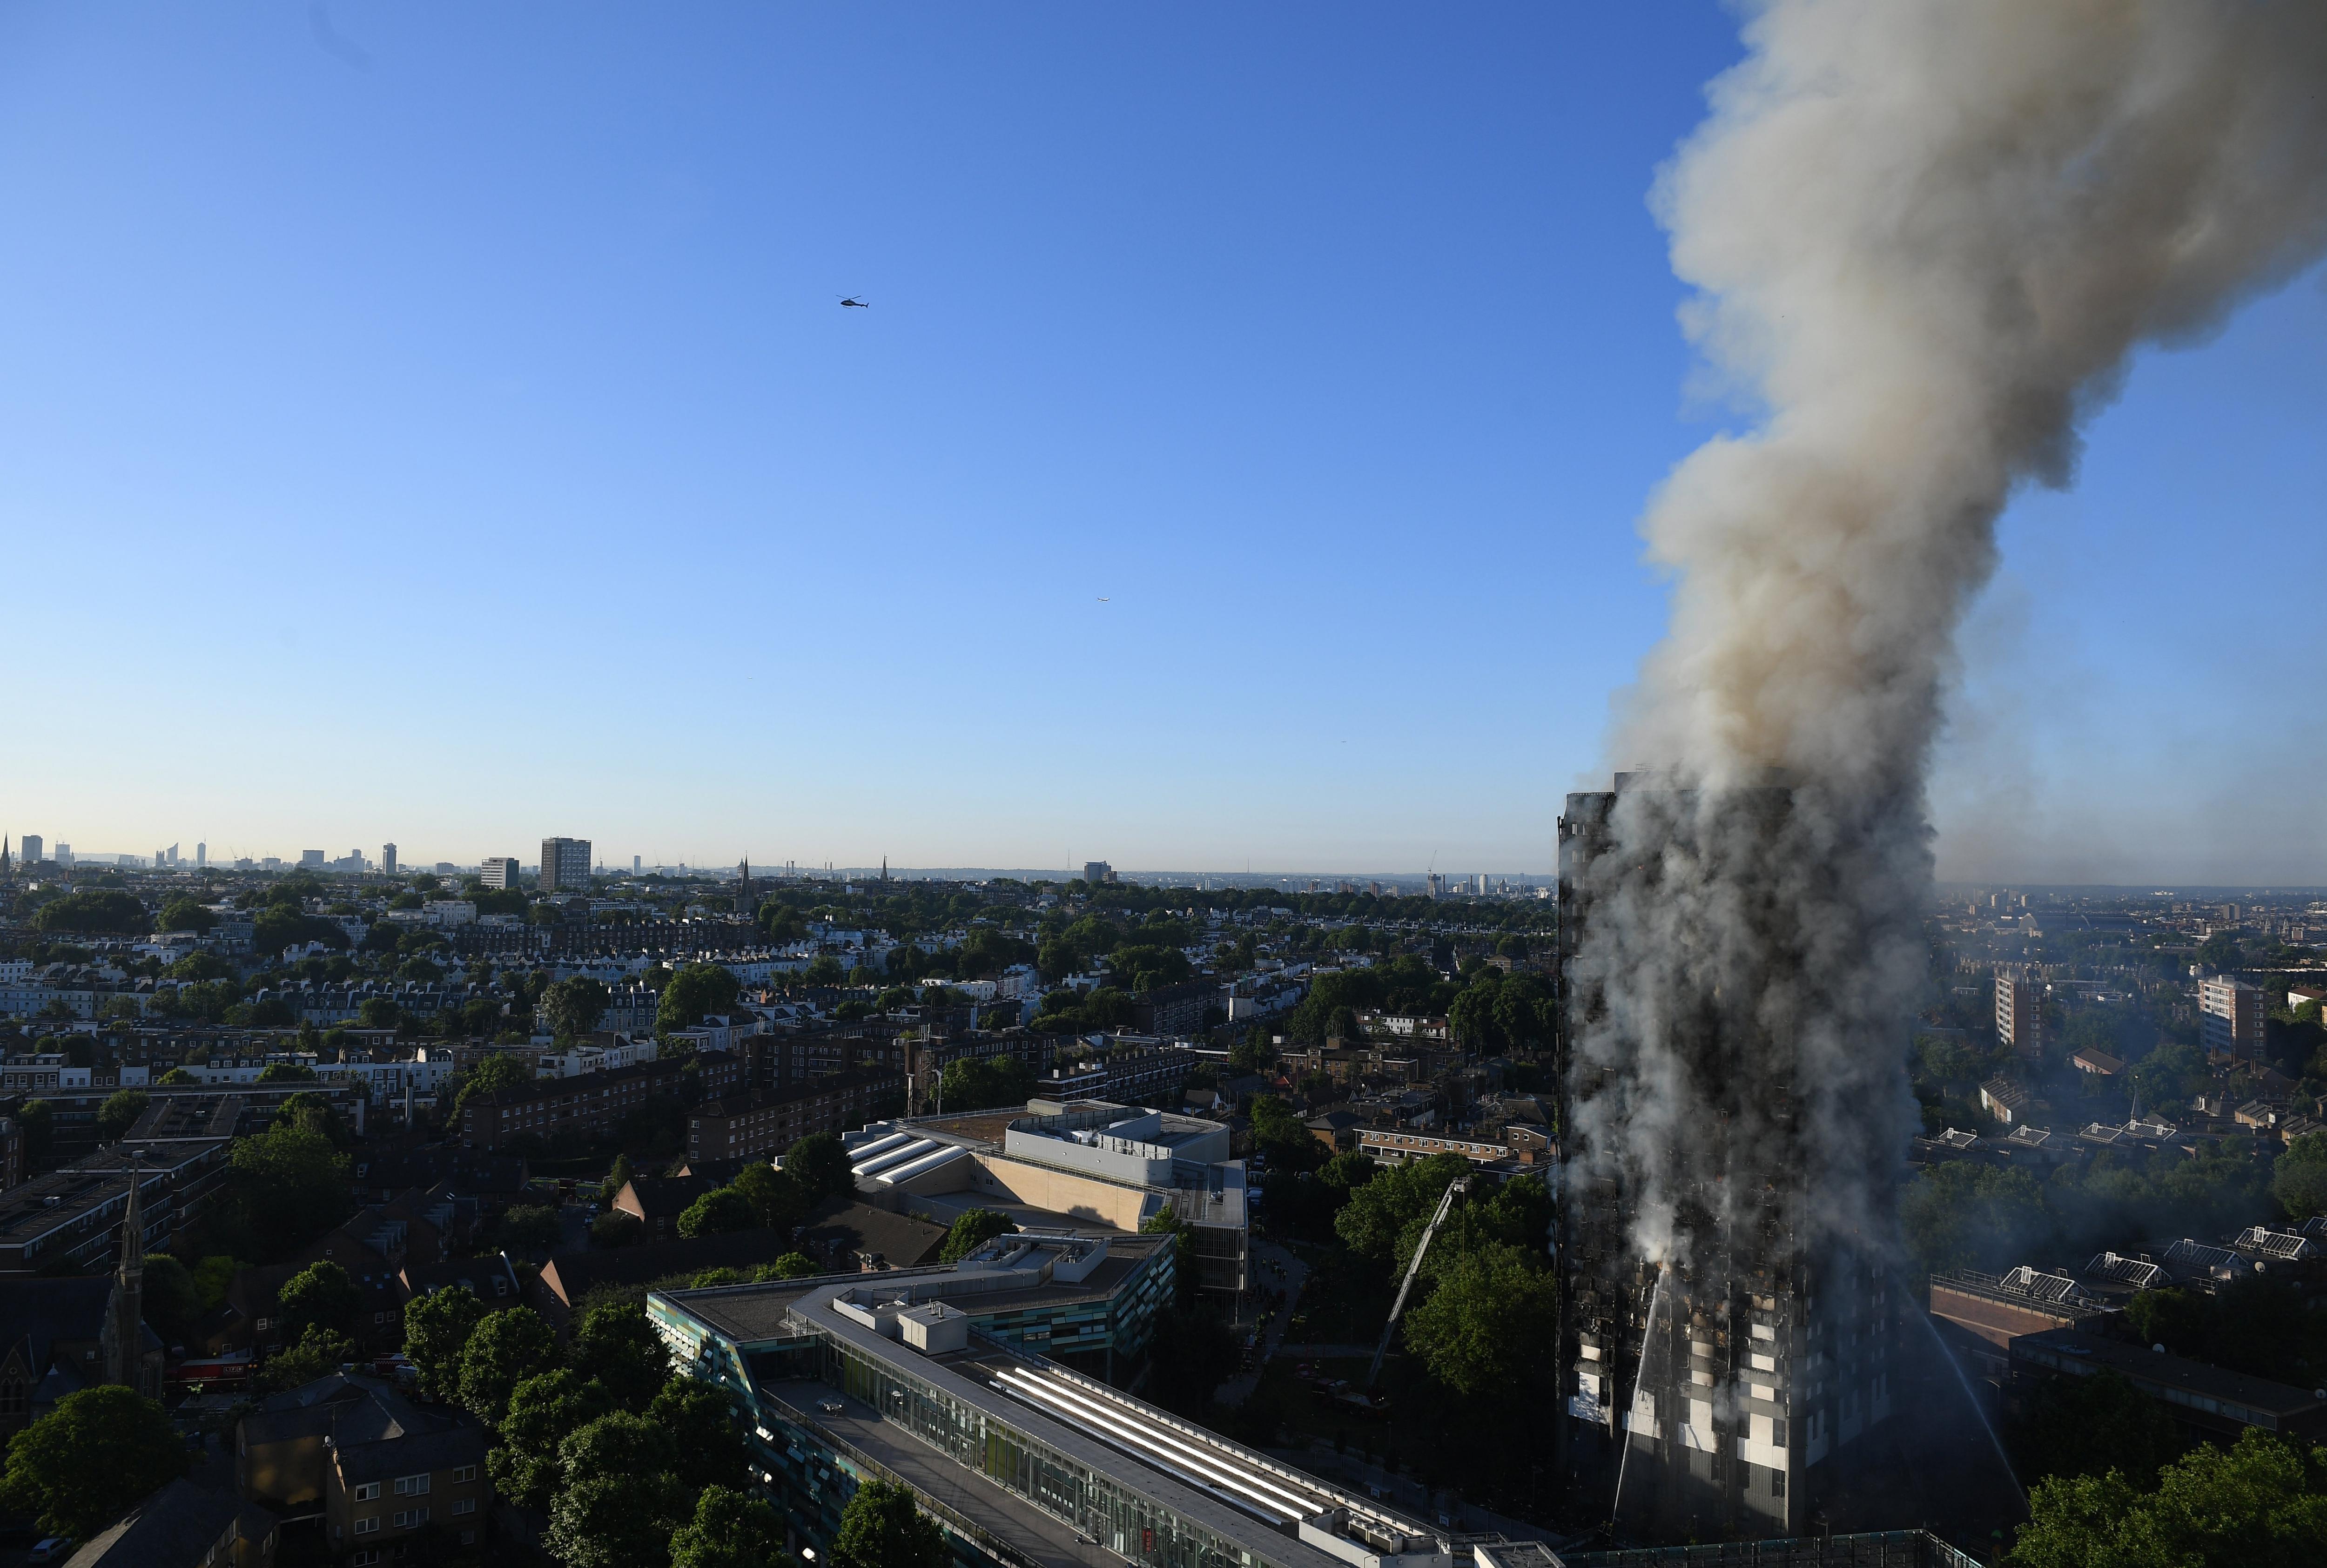 La policia confirma la muerte de 71 personas en el incendio de la torre Grenfell de Londres